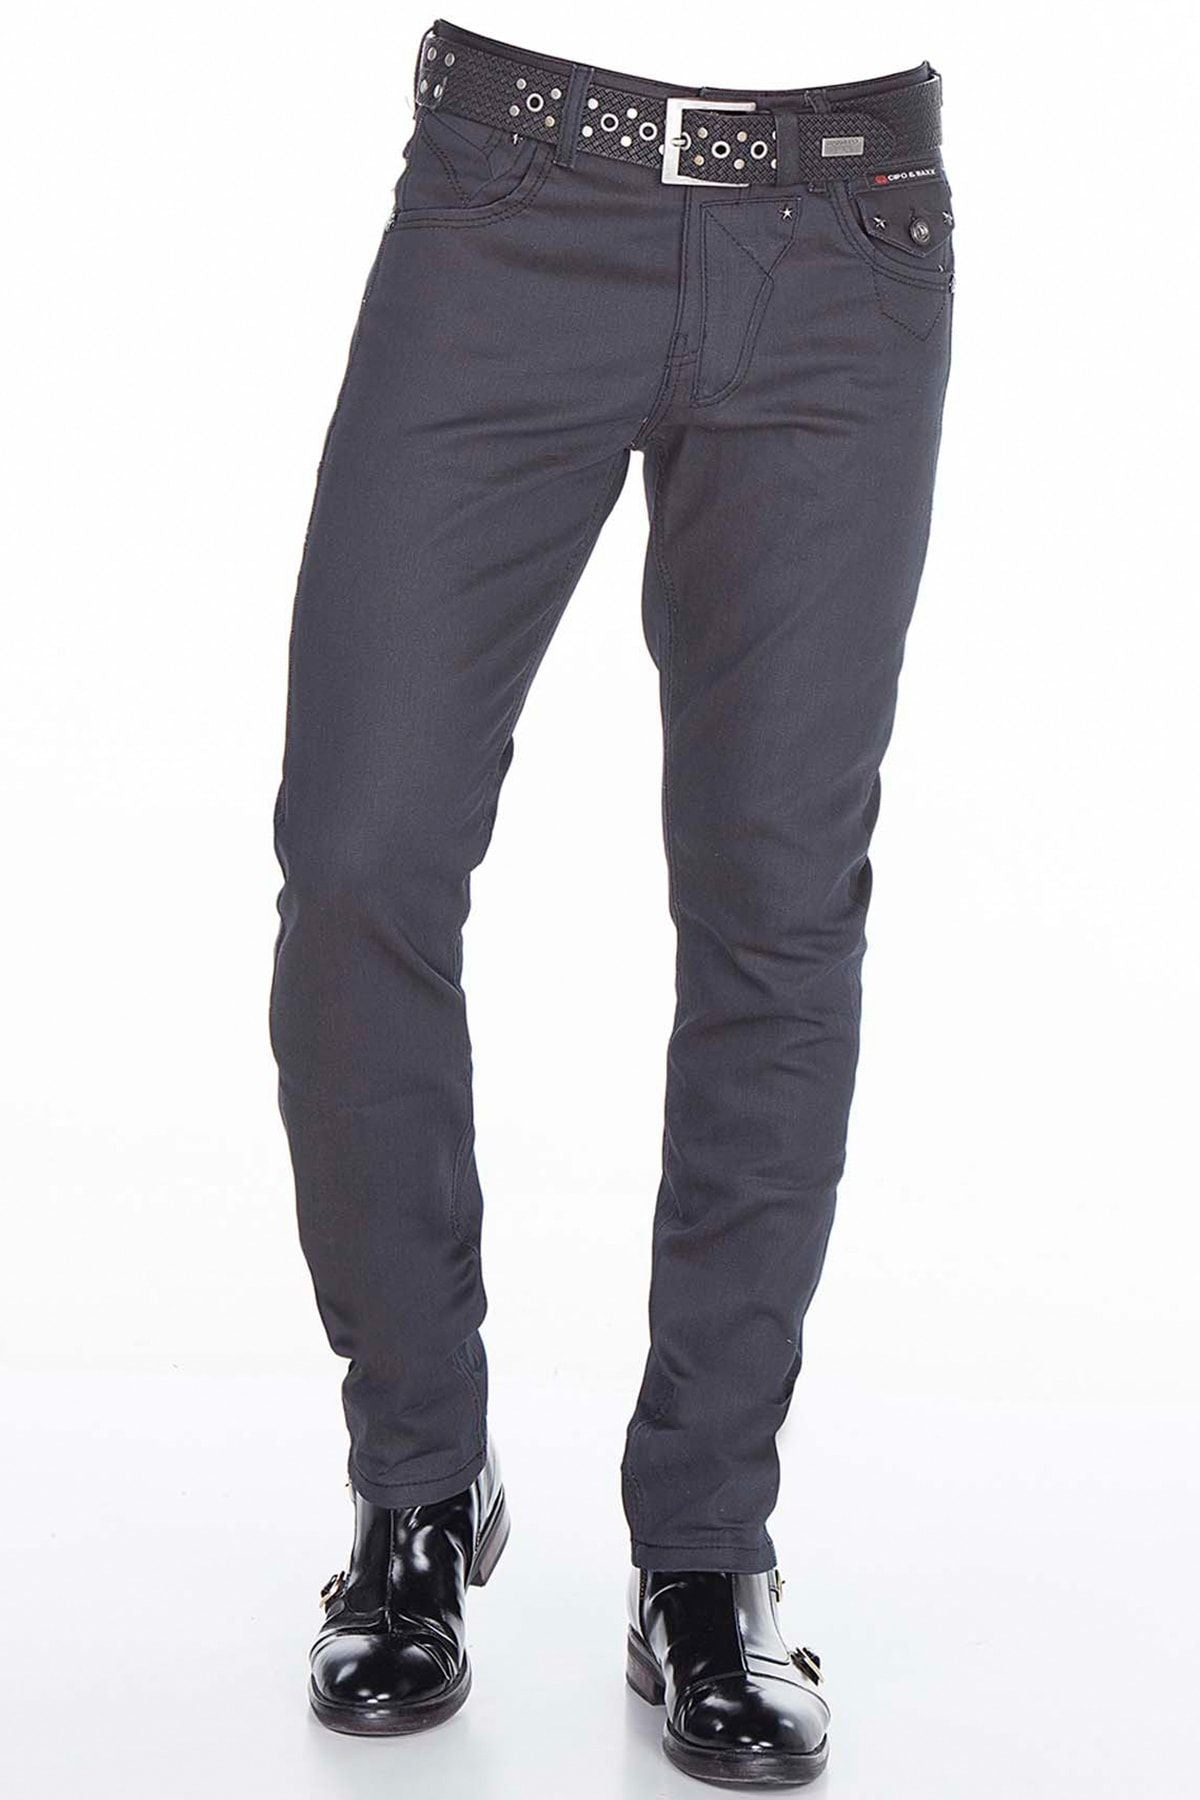 CD398 Jeans cómodos para hombres en un aspecto moderno